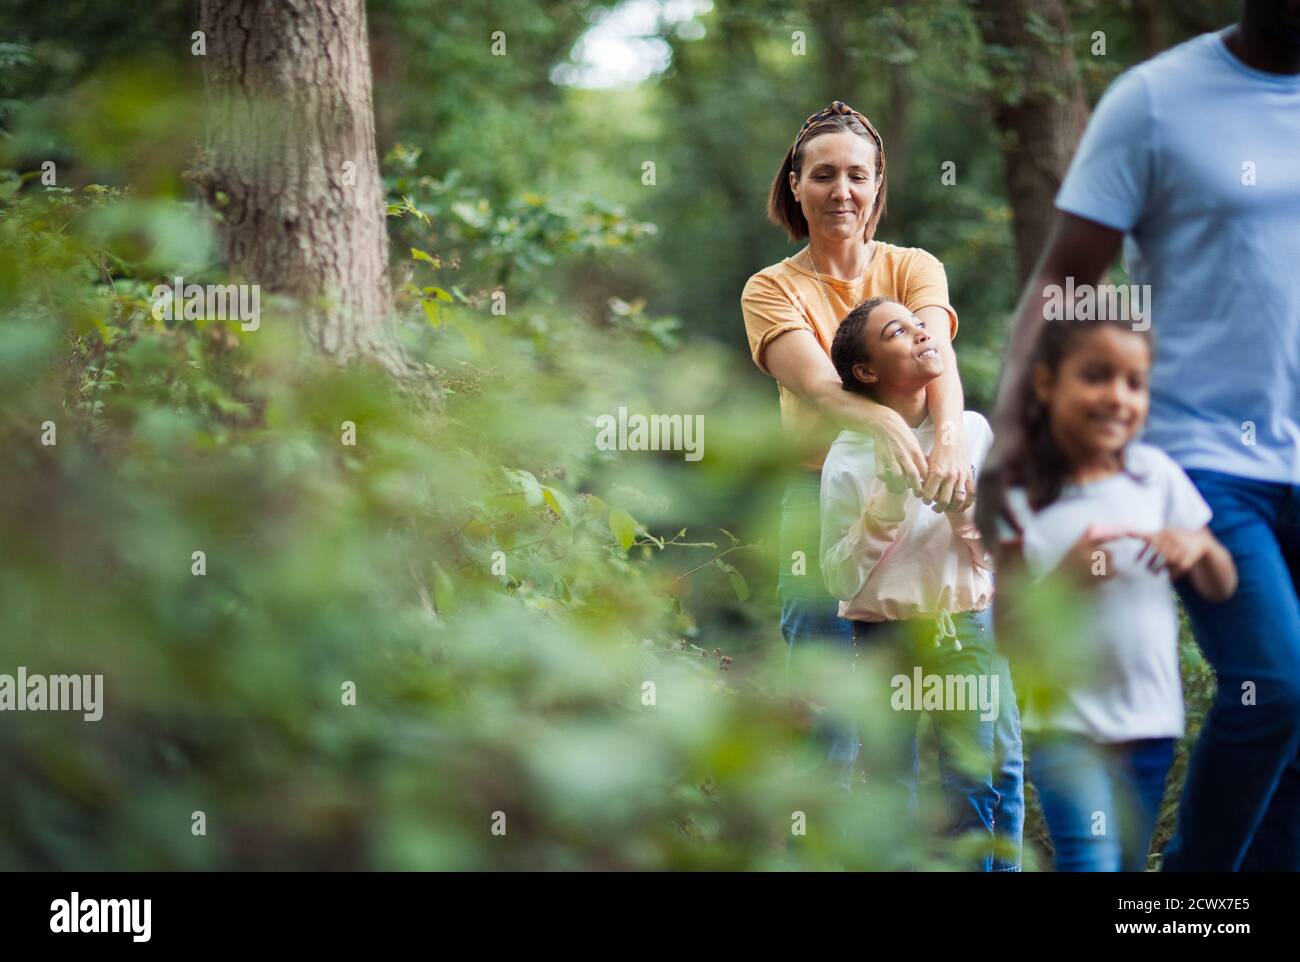 Bonne randonnée en famille dans les bois Banque D'Images